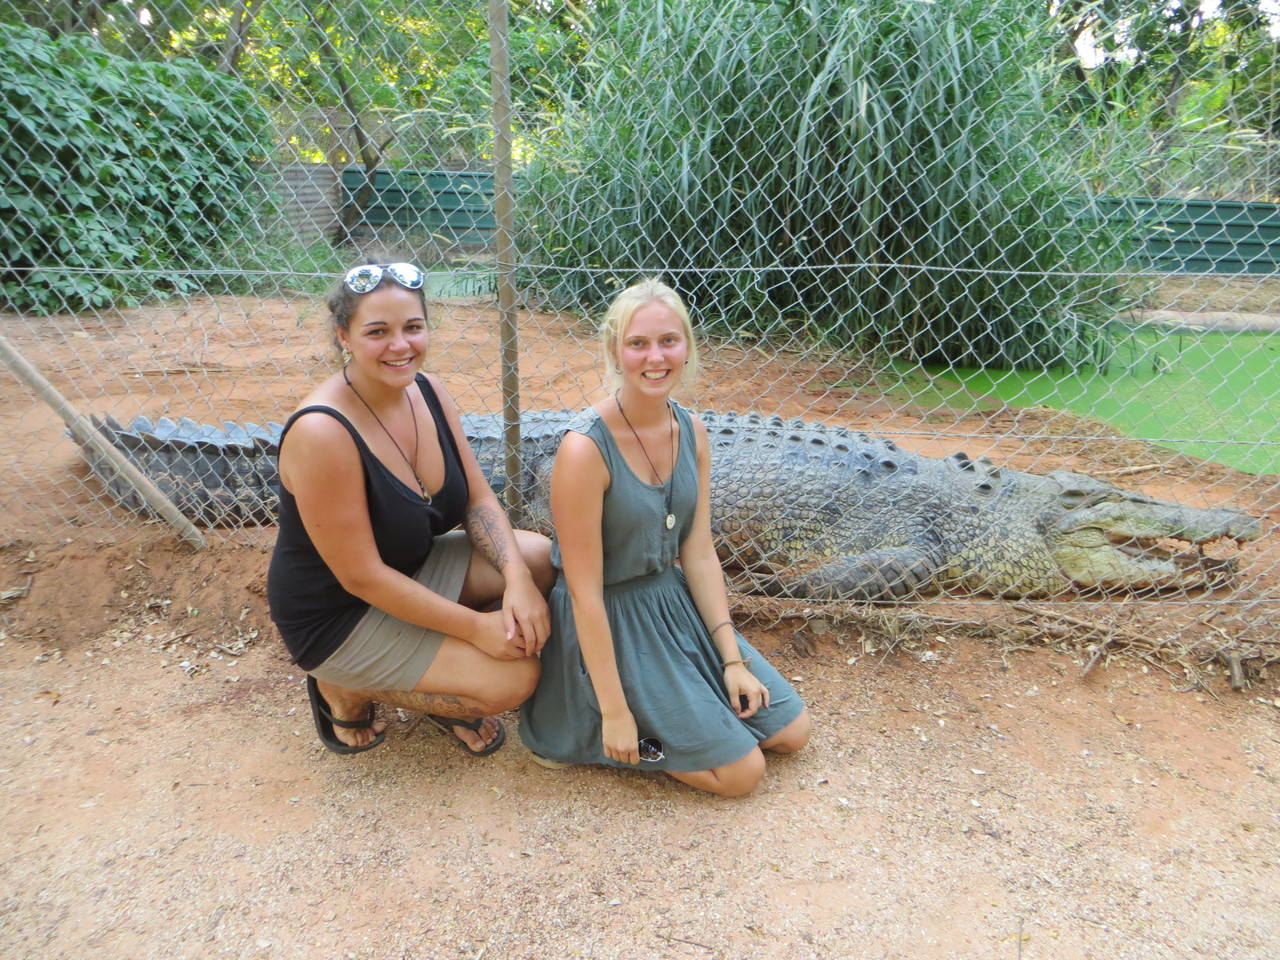 Im Hintergund eines der größten Krokodile im Park